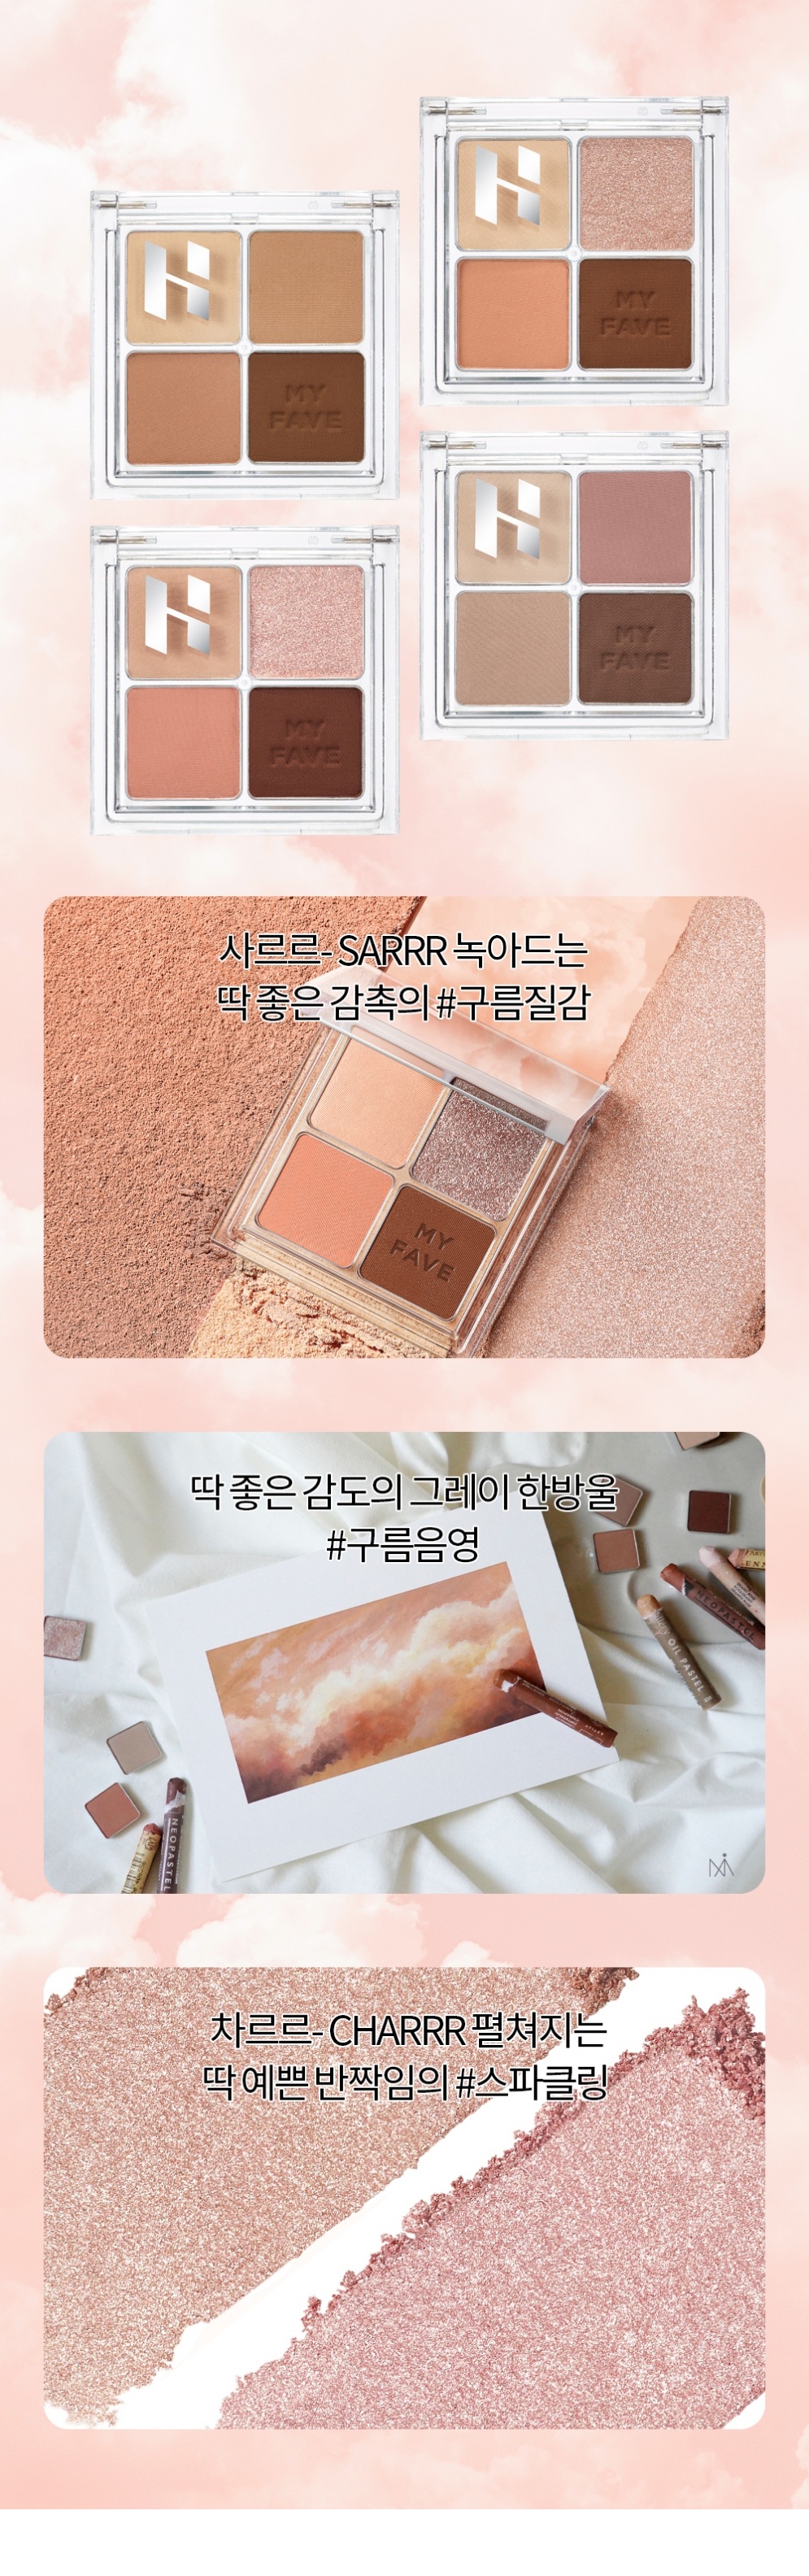 Holika Holika My Fave Eye Shadow Palette korean makeup product online shop malaysia China indonesia2a